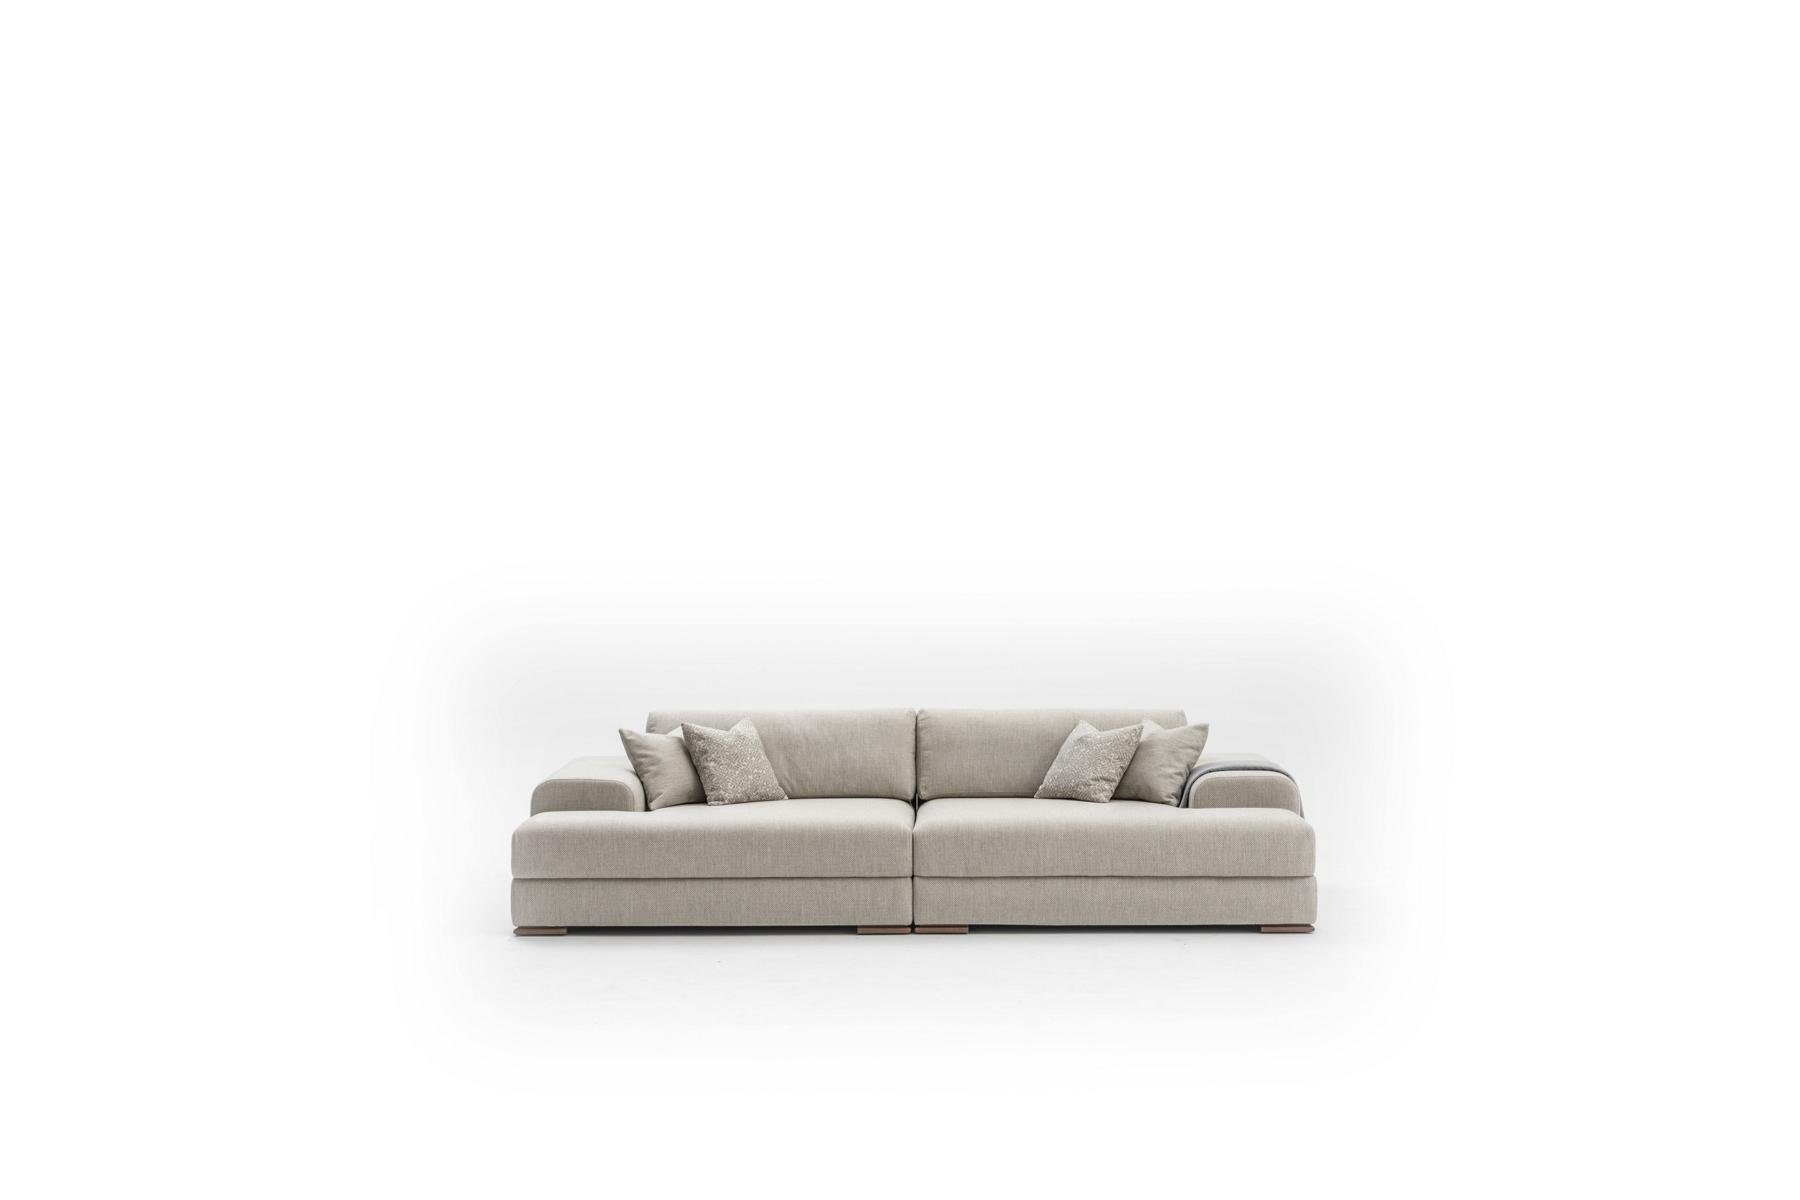 JVmoebel 3-Sitzer Grau Sofa 3 Sitzer Wohnzimmer Design Big Sofas Couchen 260 cm, Made in Europe